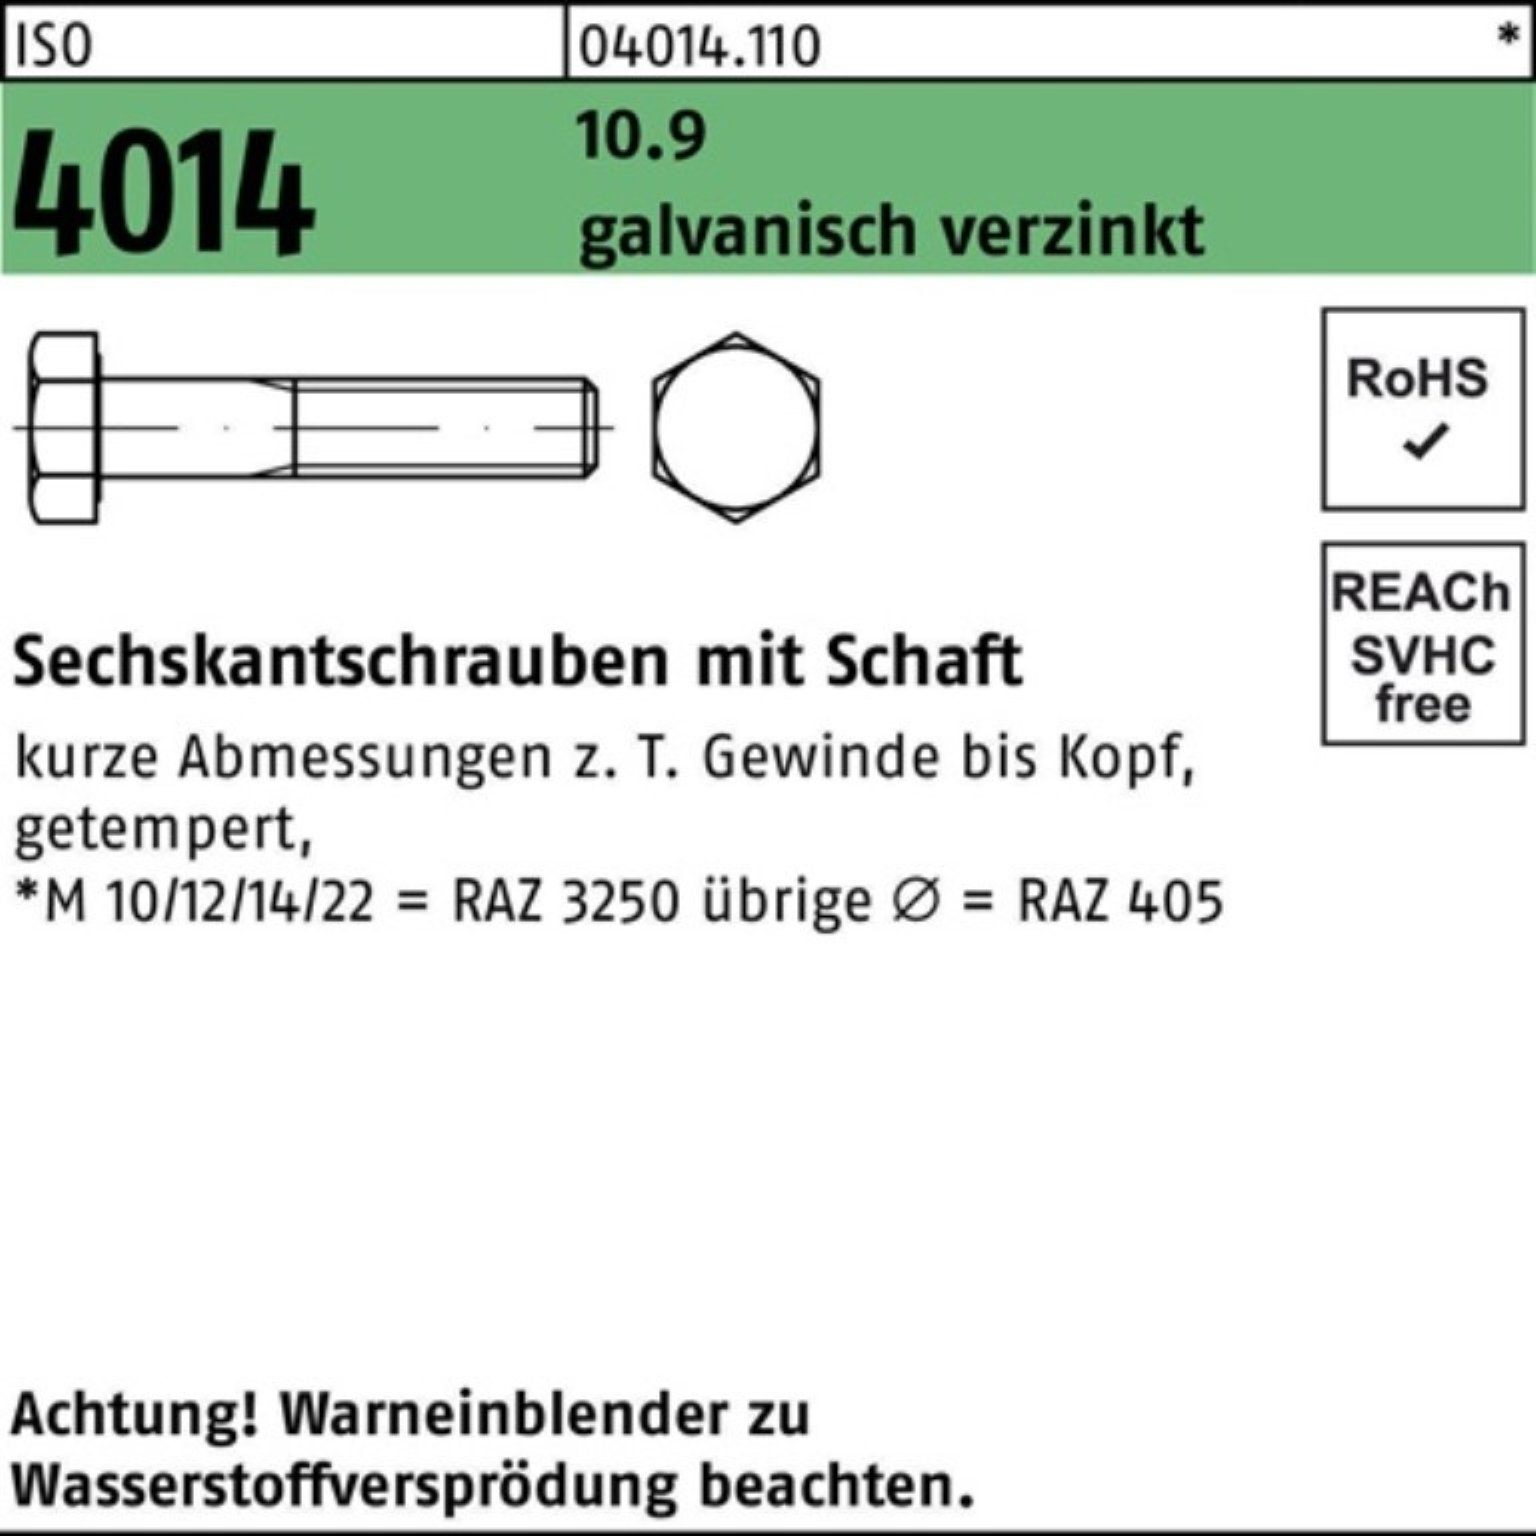 ISO Sechskantschraube M27x galv.verz. Bufab 100er Sechskantschraube 130 Schaft Pack 4014 10.9